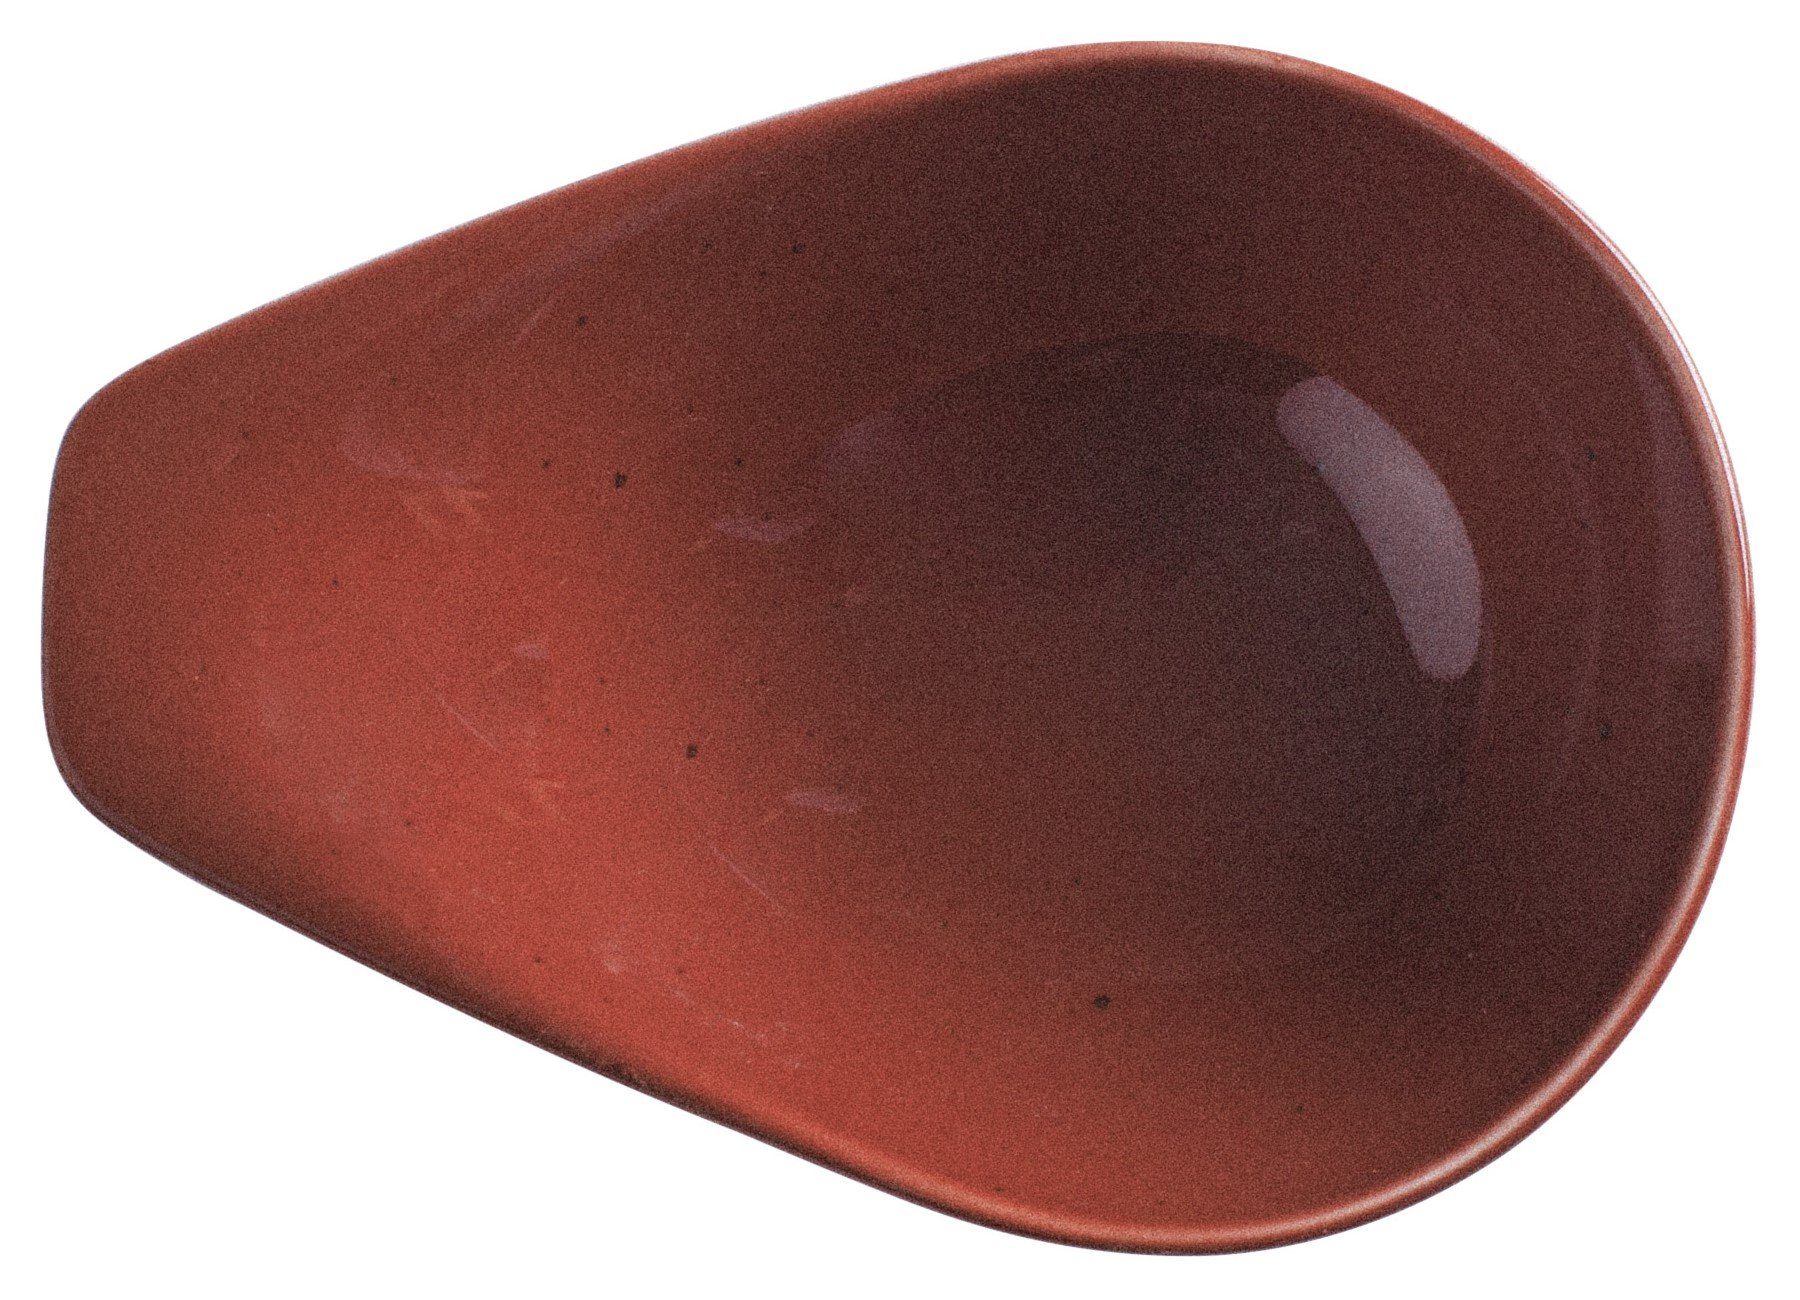 Kahla Suppenschale Homestyle 0,40 l, Porzellan, Handglasiert, Made in Germany siena red